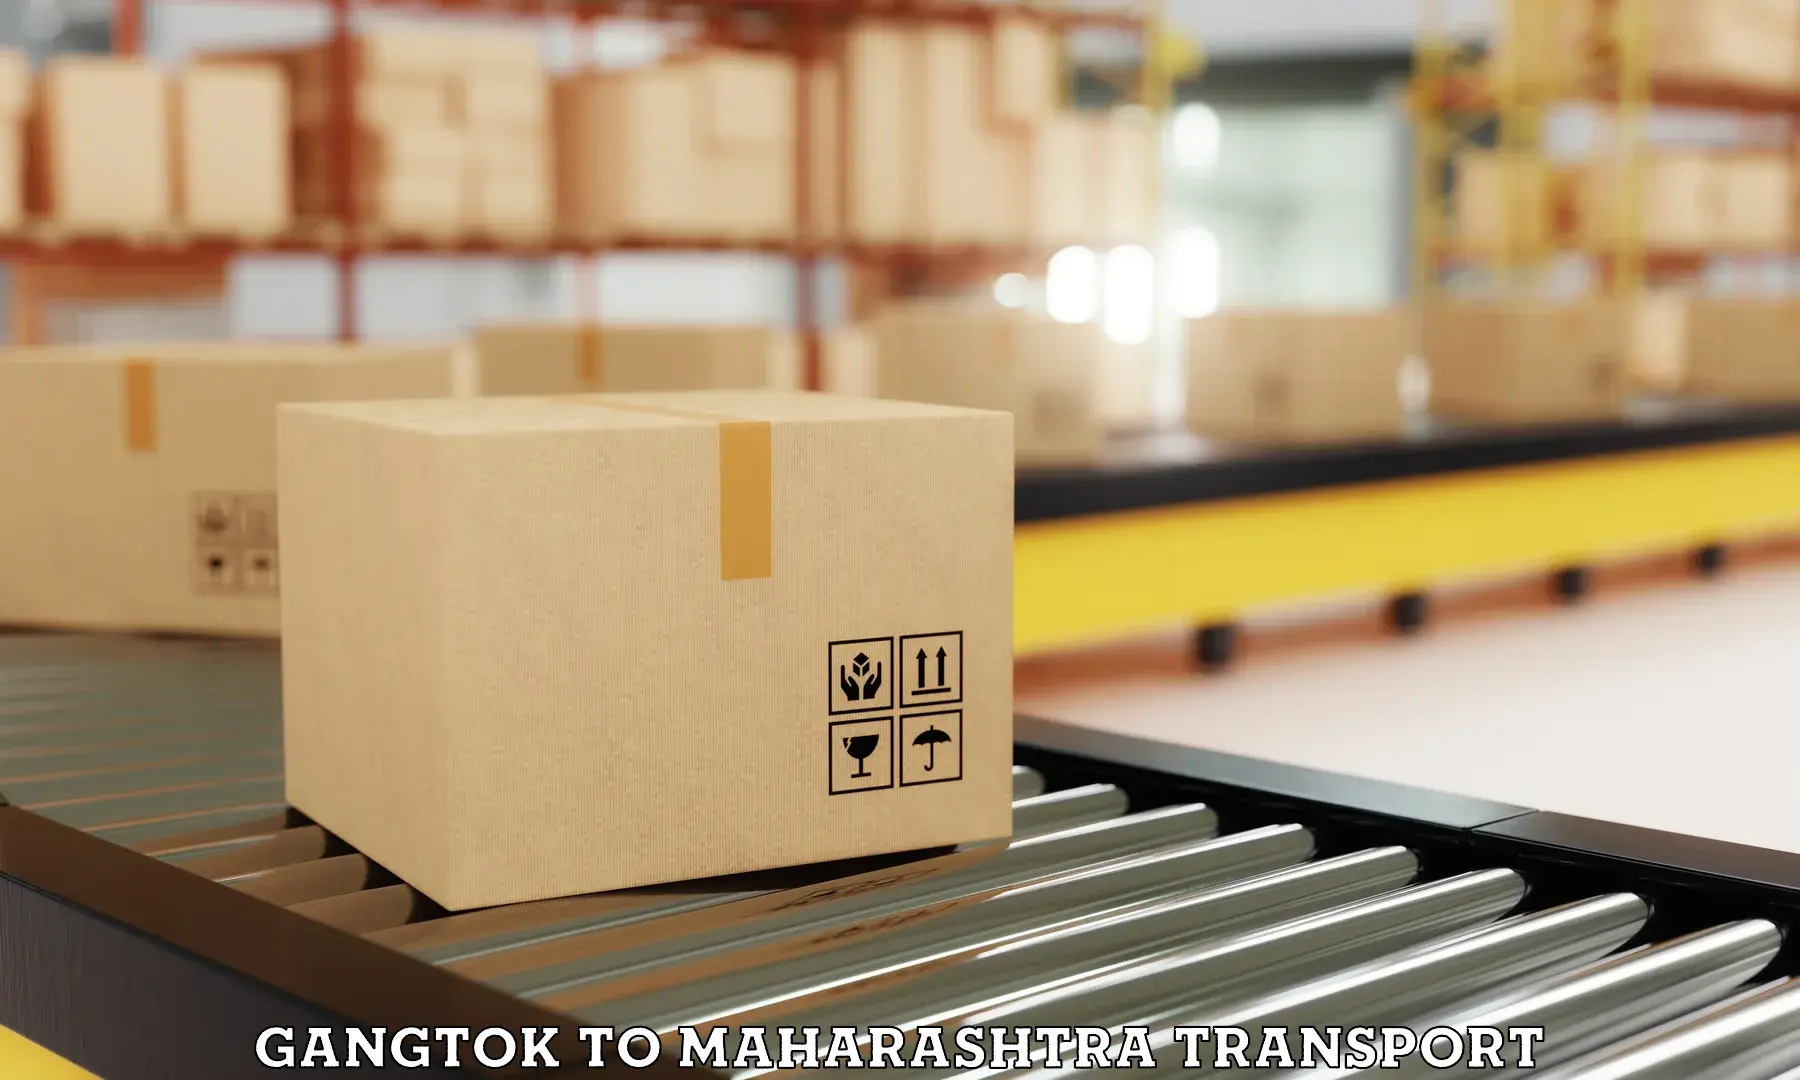 Furniture transport service Gangtok to Mumbai Port